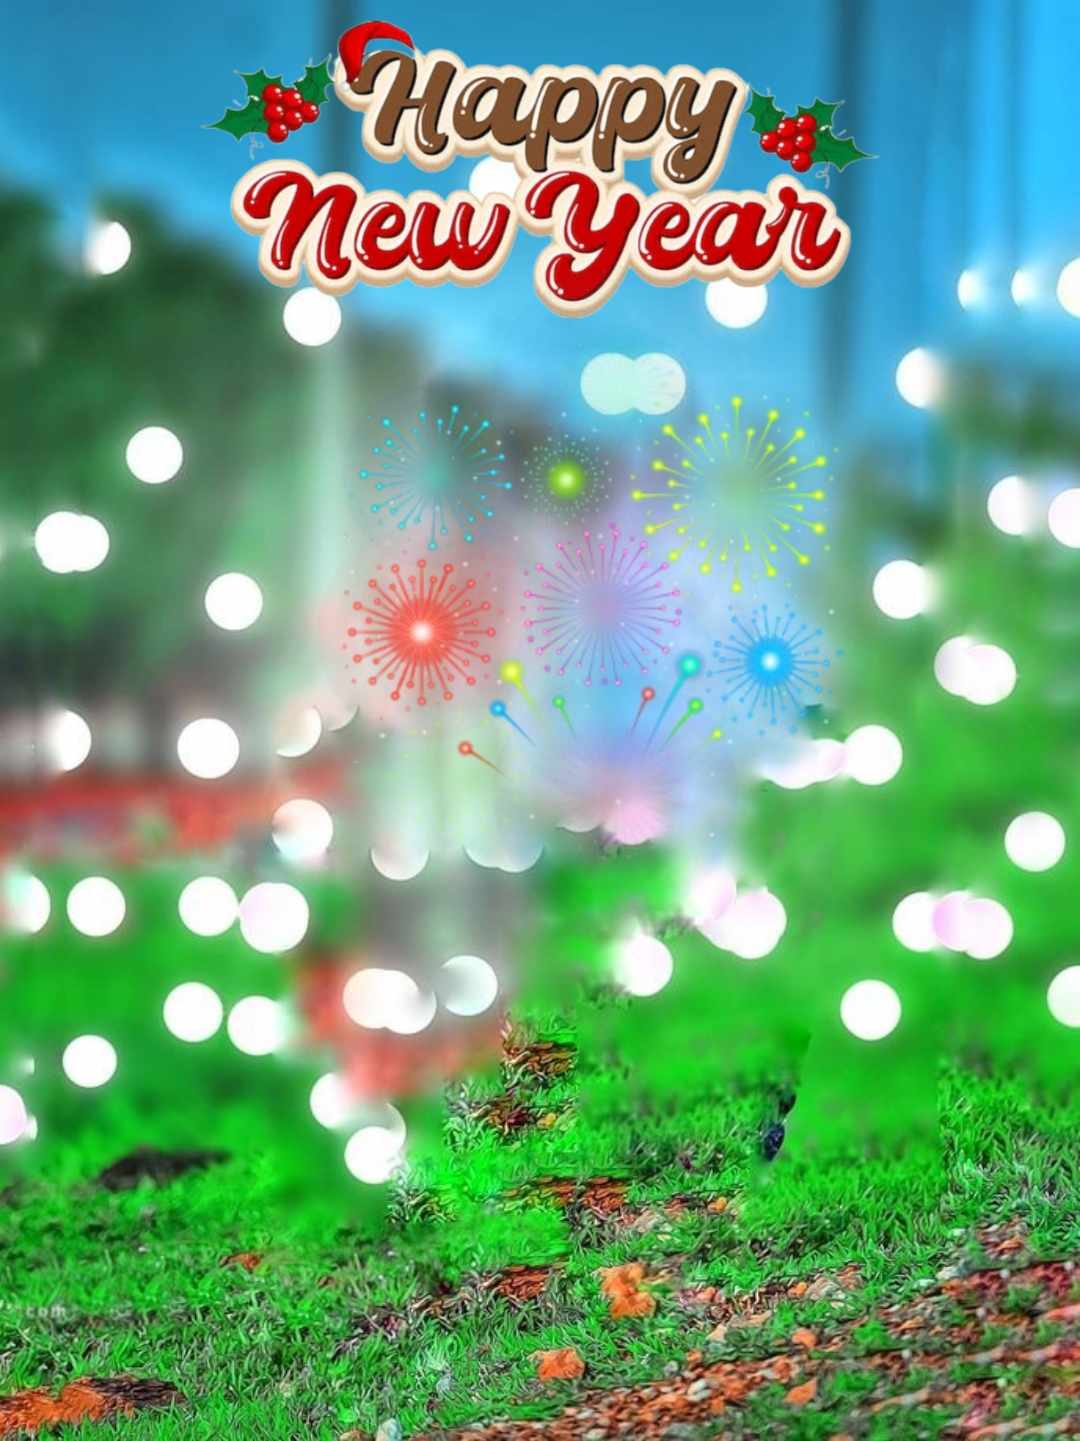 Happy New Year CB Background Image Photoshop